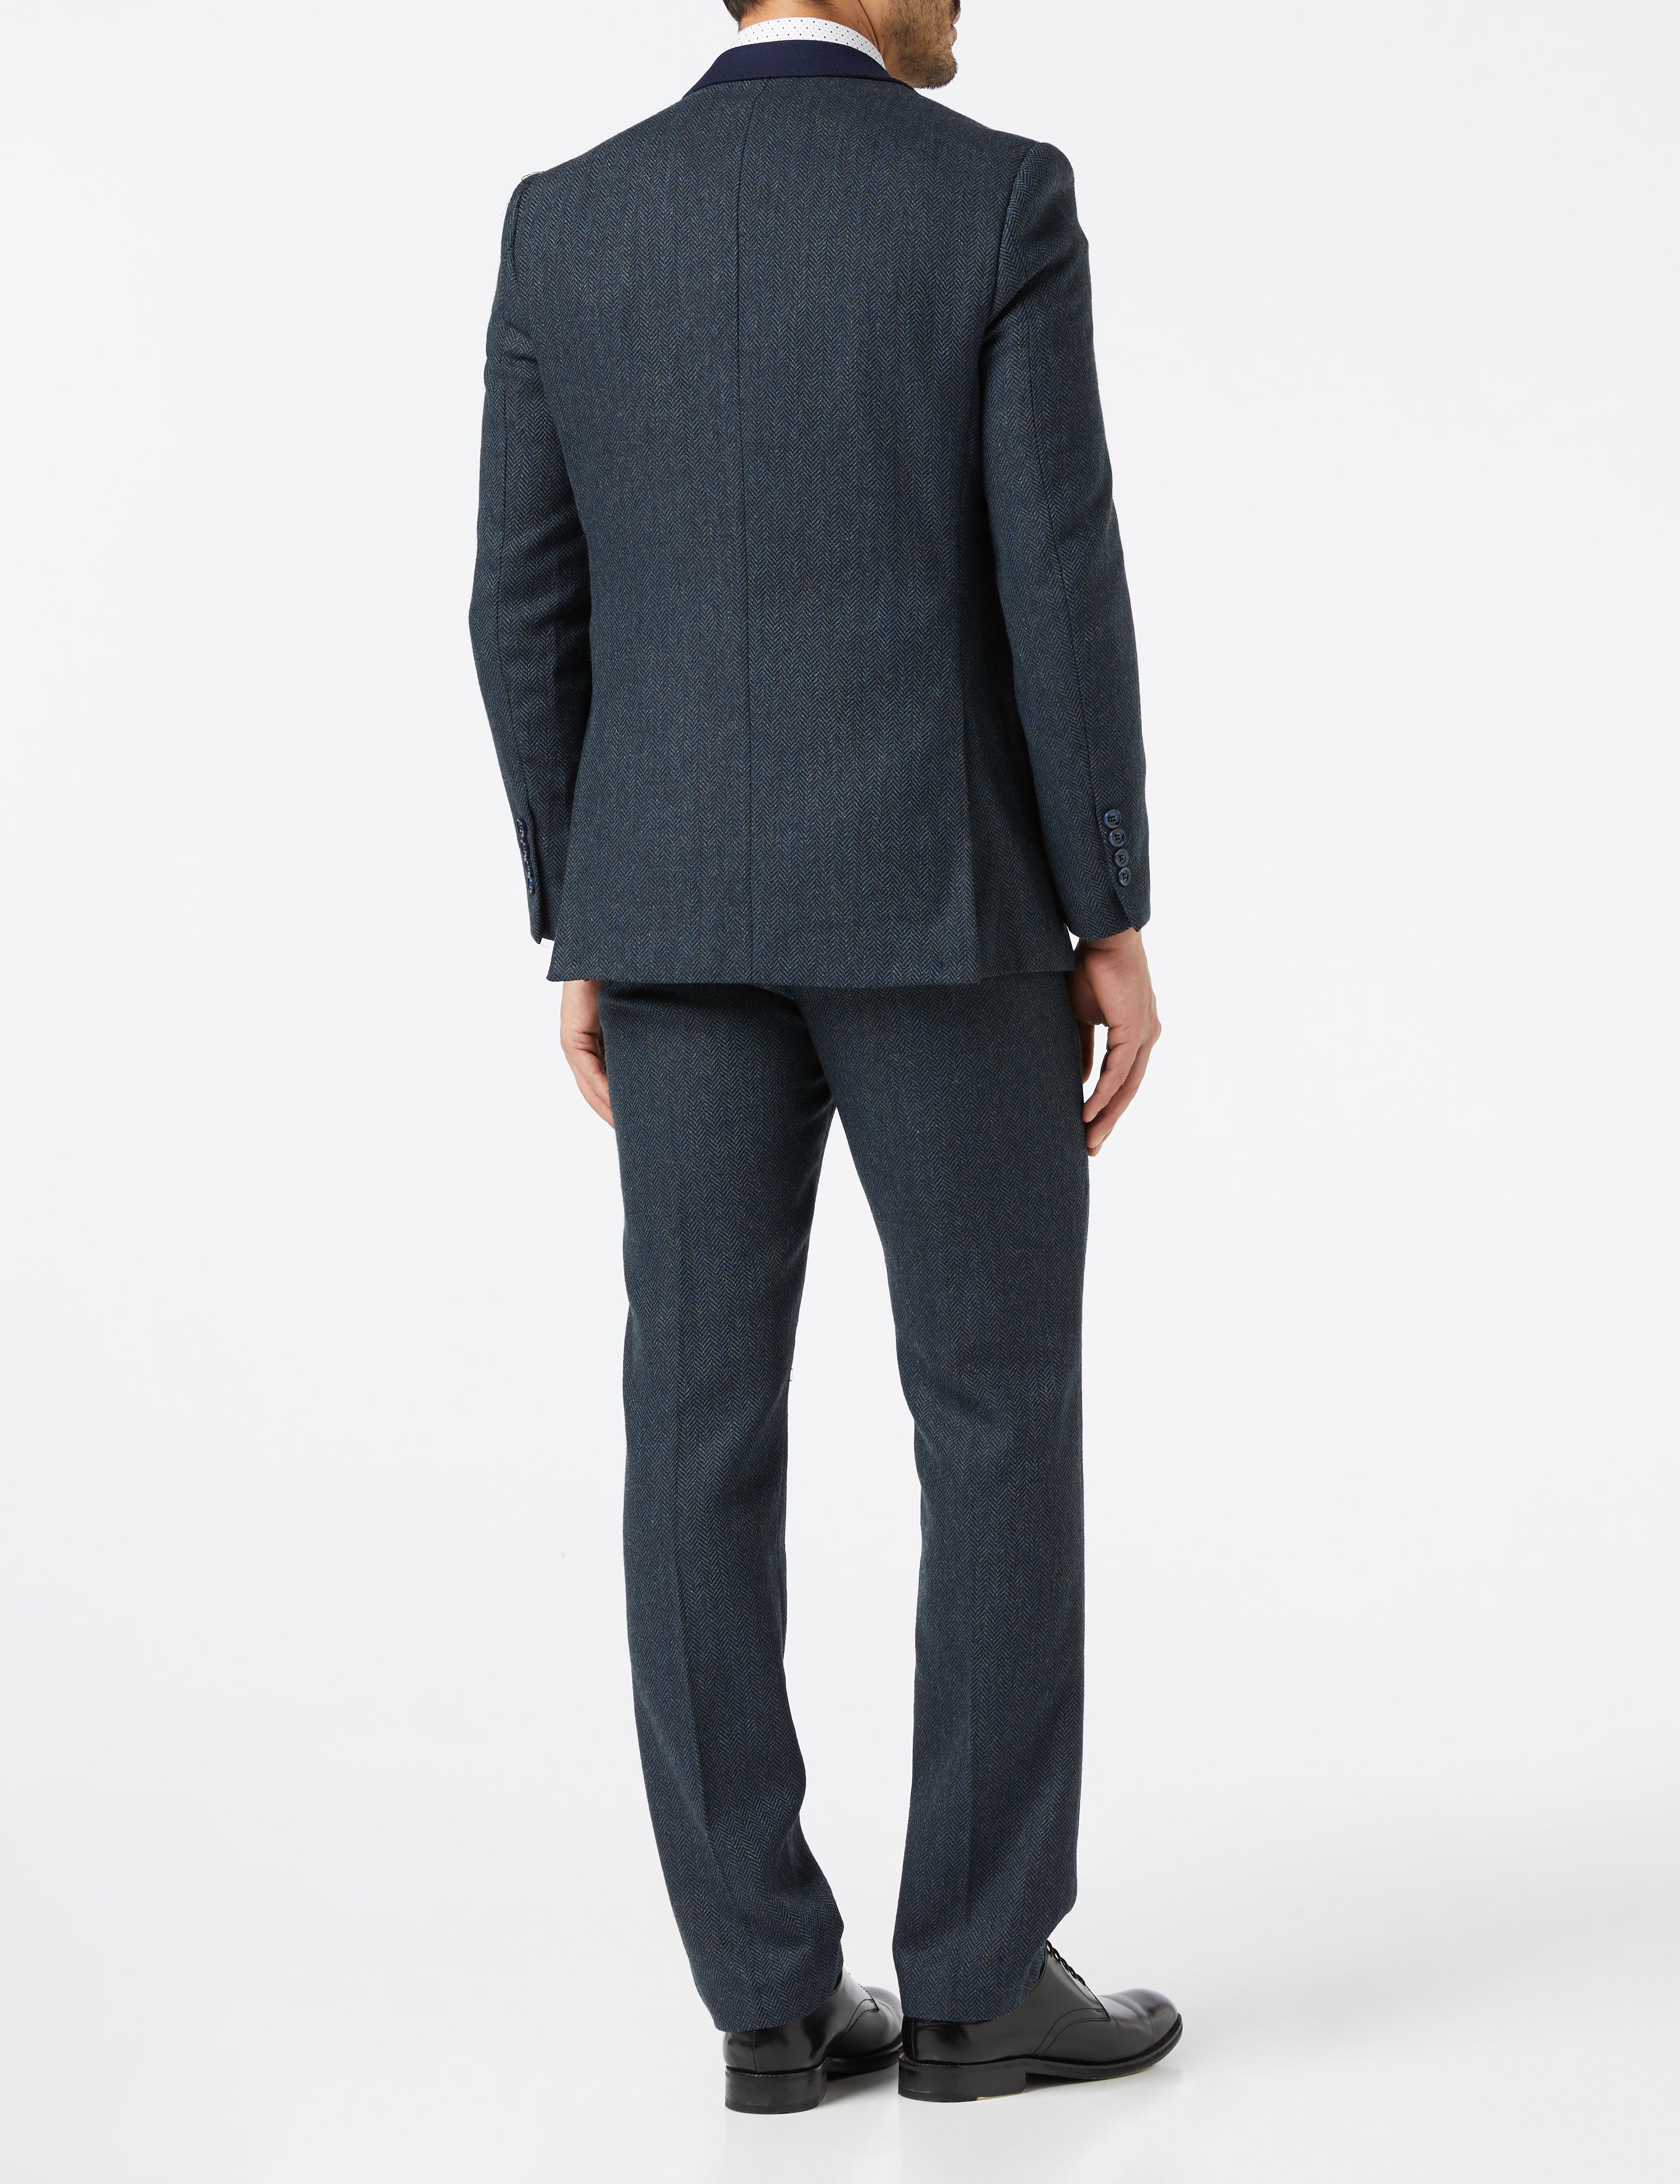 Mens 3 Piece Herringbone Tweed Suit Navy Blinders Blazer Waistcoat Trouser